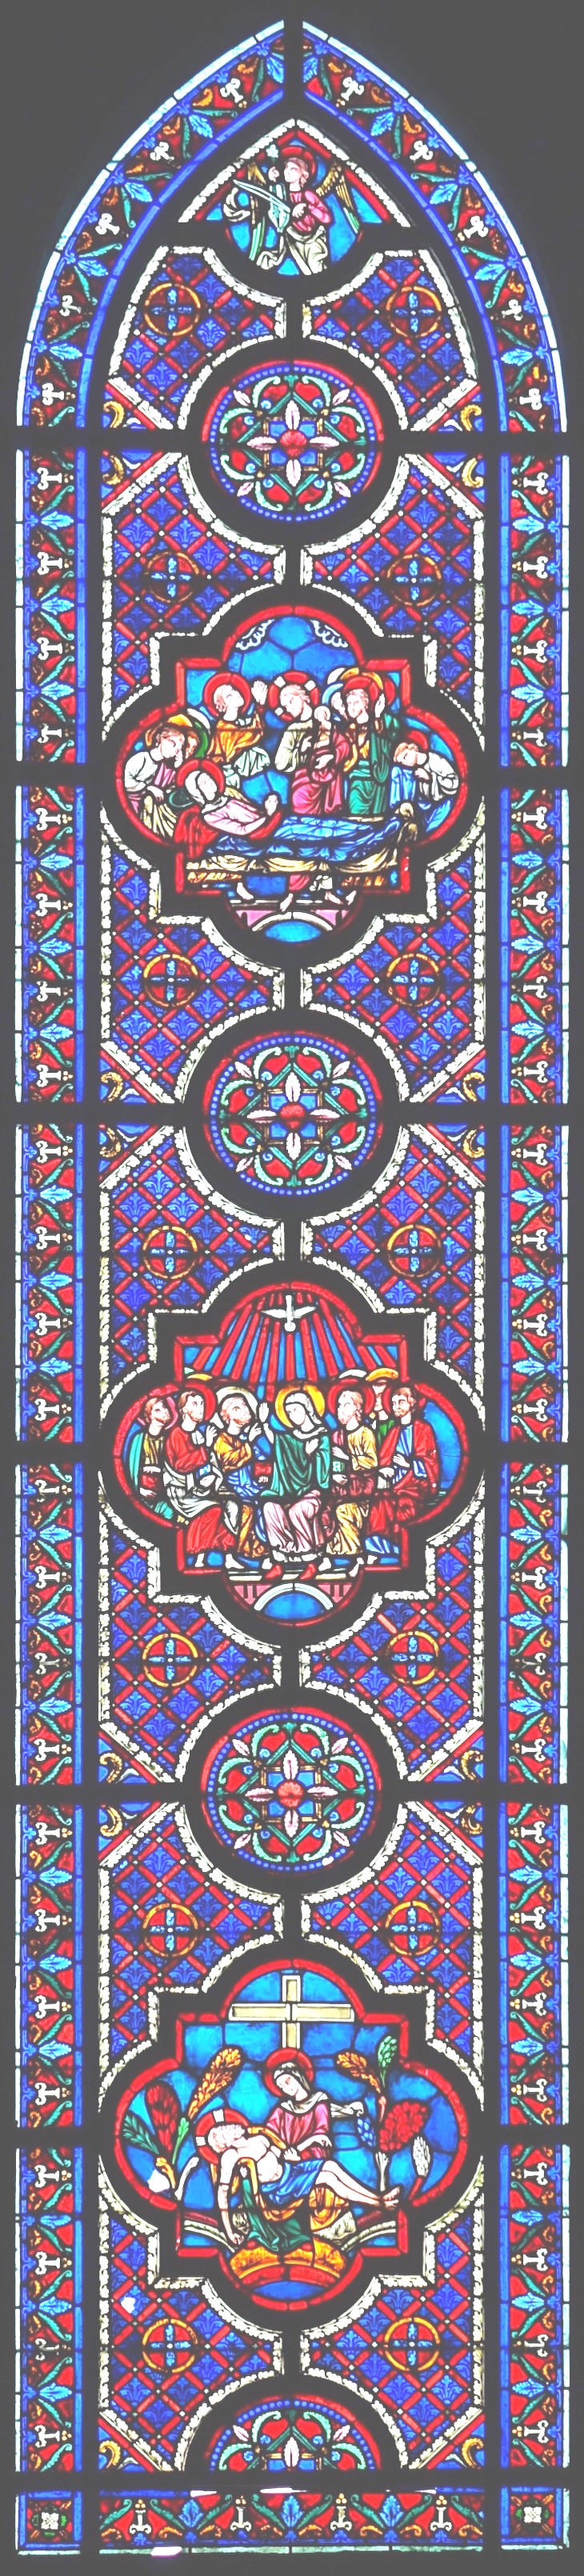 B6 - vitraux de la chapelle épiscopale saint-omer